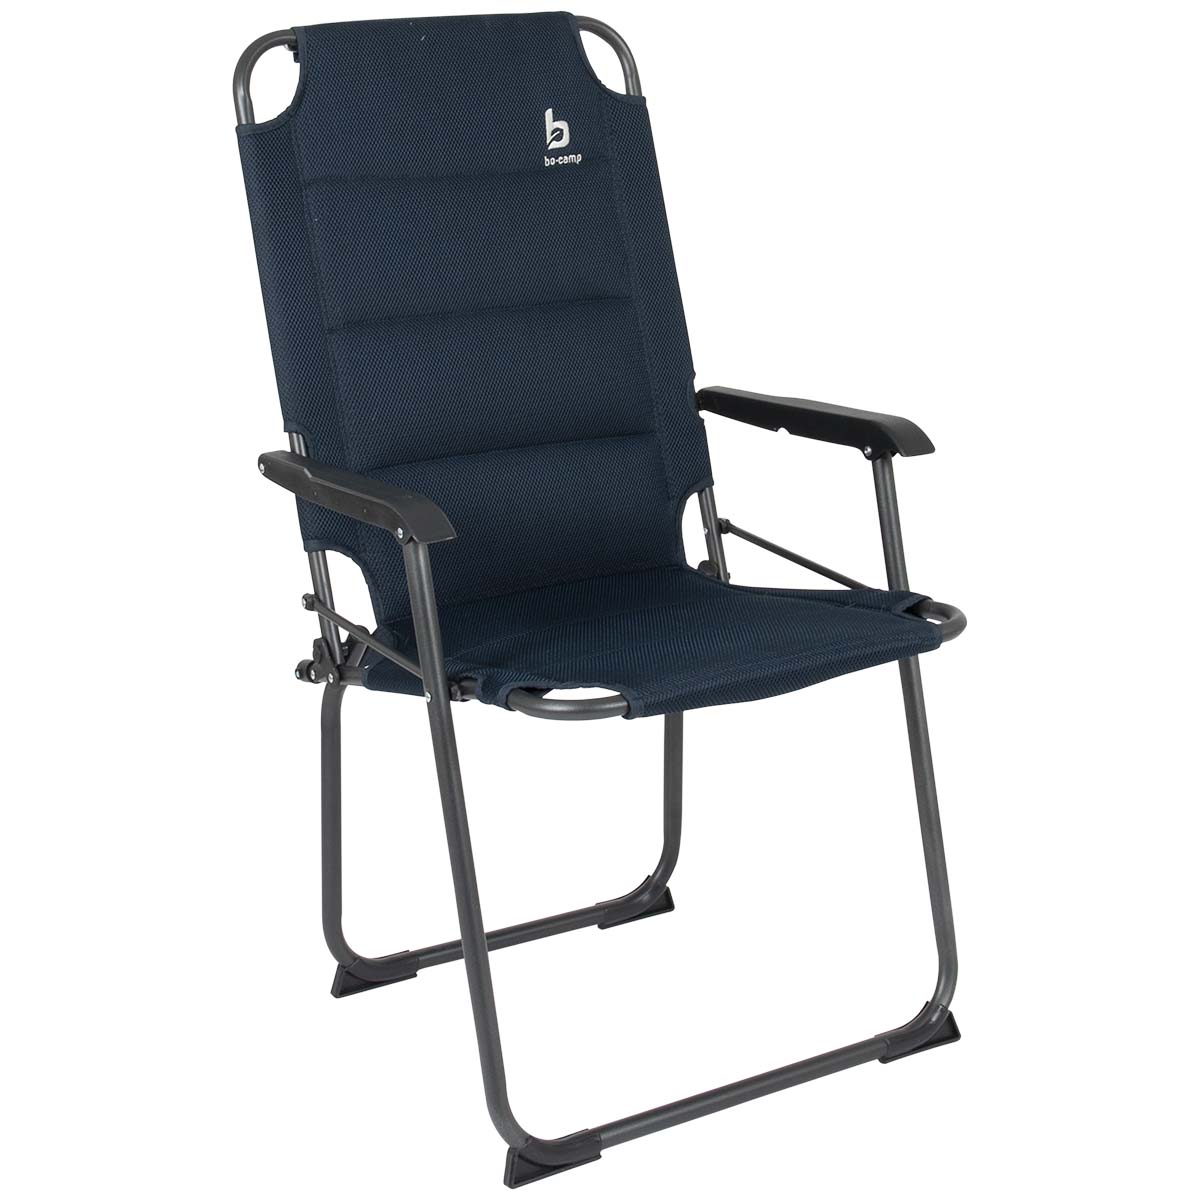 1211857 "Een extra hoge en comfortabele klapstoel. Een stoel waarbij stijl, comfort en functionaliteit worden gecombineerd. Voorzien zeer comfortabele 3D mesh gepolsterde stof en een lichtgewicht aluminium frame. Daarnaast is deze stoel voorzien van extra stabilisatoren en een 'safety-lock' tegen ongewenst inklappen. Compact mee te nemen (ingeklapt lxbxh): 75x58x7 centimeter. Zithoogte: 47 centimeter. Zitdiepte: 46 centimeter. Zitbreedte: 48 centimeter. Ruglengte: 61 cm. Maximale belasting: 110 kilogram."